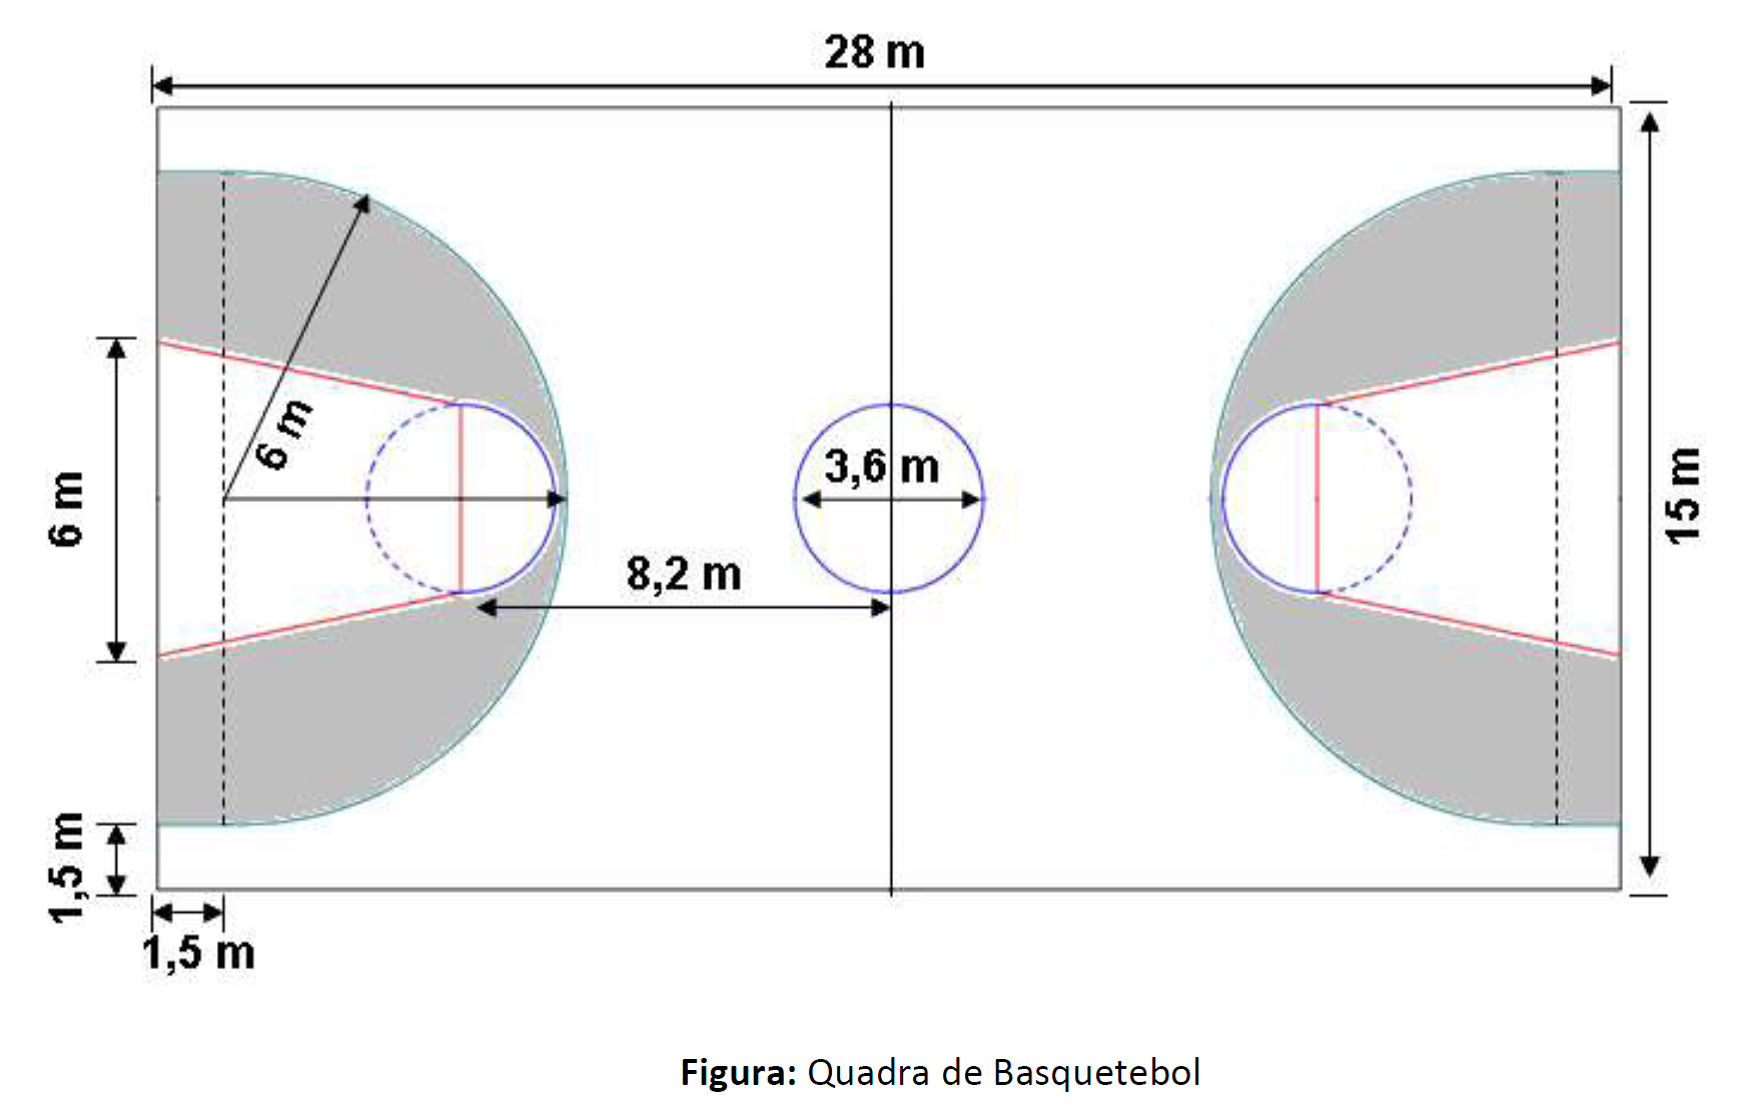 Conheça a Engenharia Paraolímpica do Basquetebol